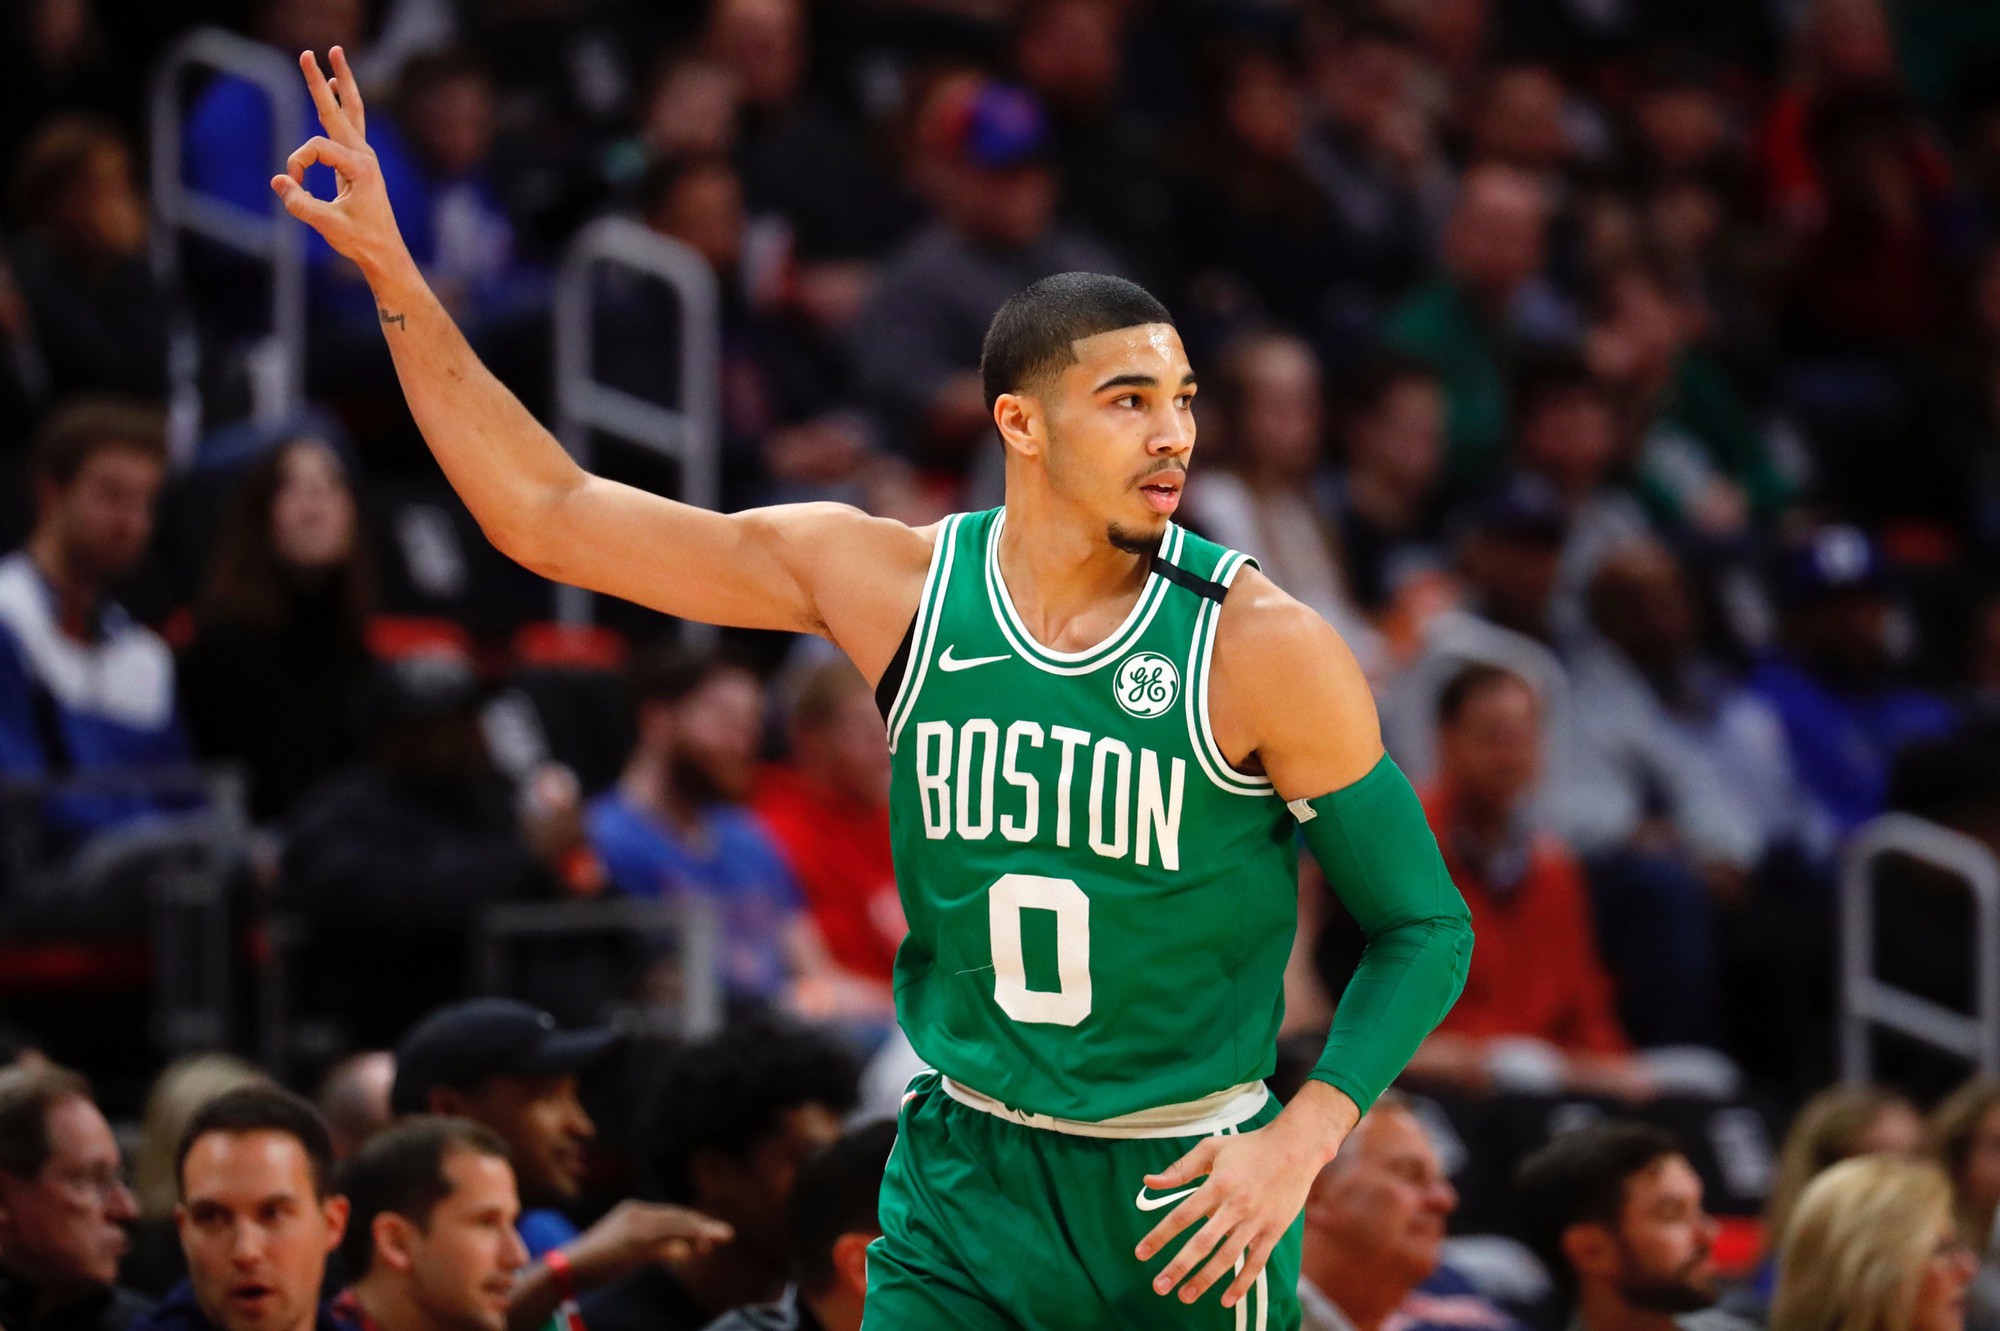 Nhìn lại phép màu 5 năm và cuộc hồi sinh thần kỳ của Boston Celtics, không có thành tựu nào là may mắn - Ảnh 8.